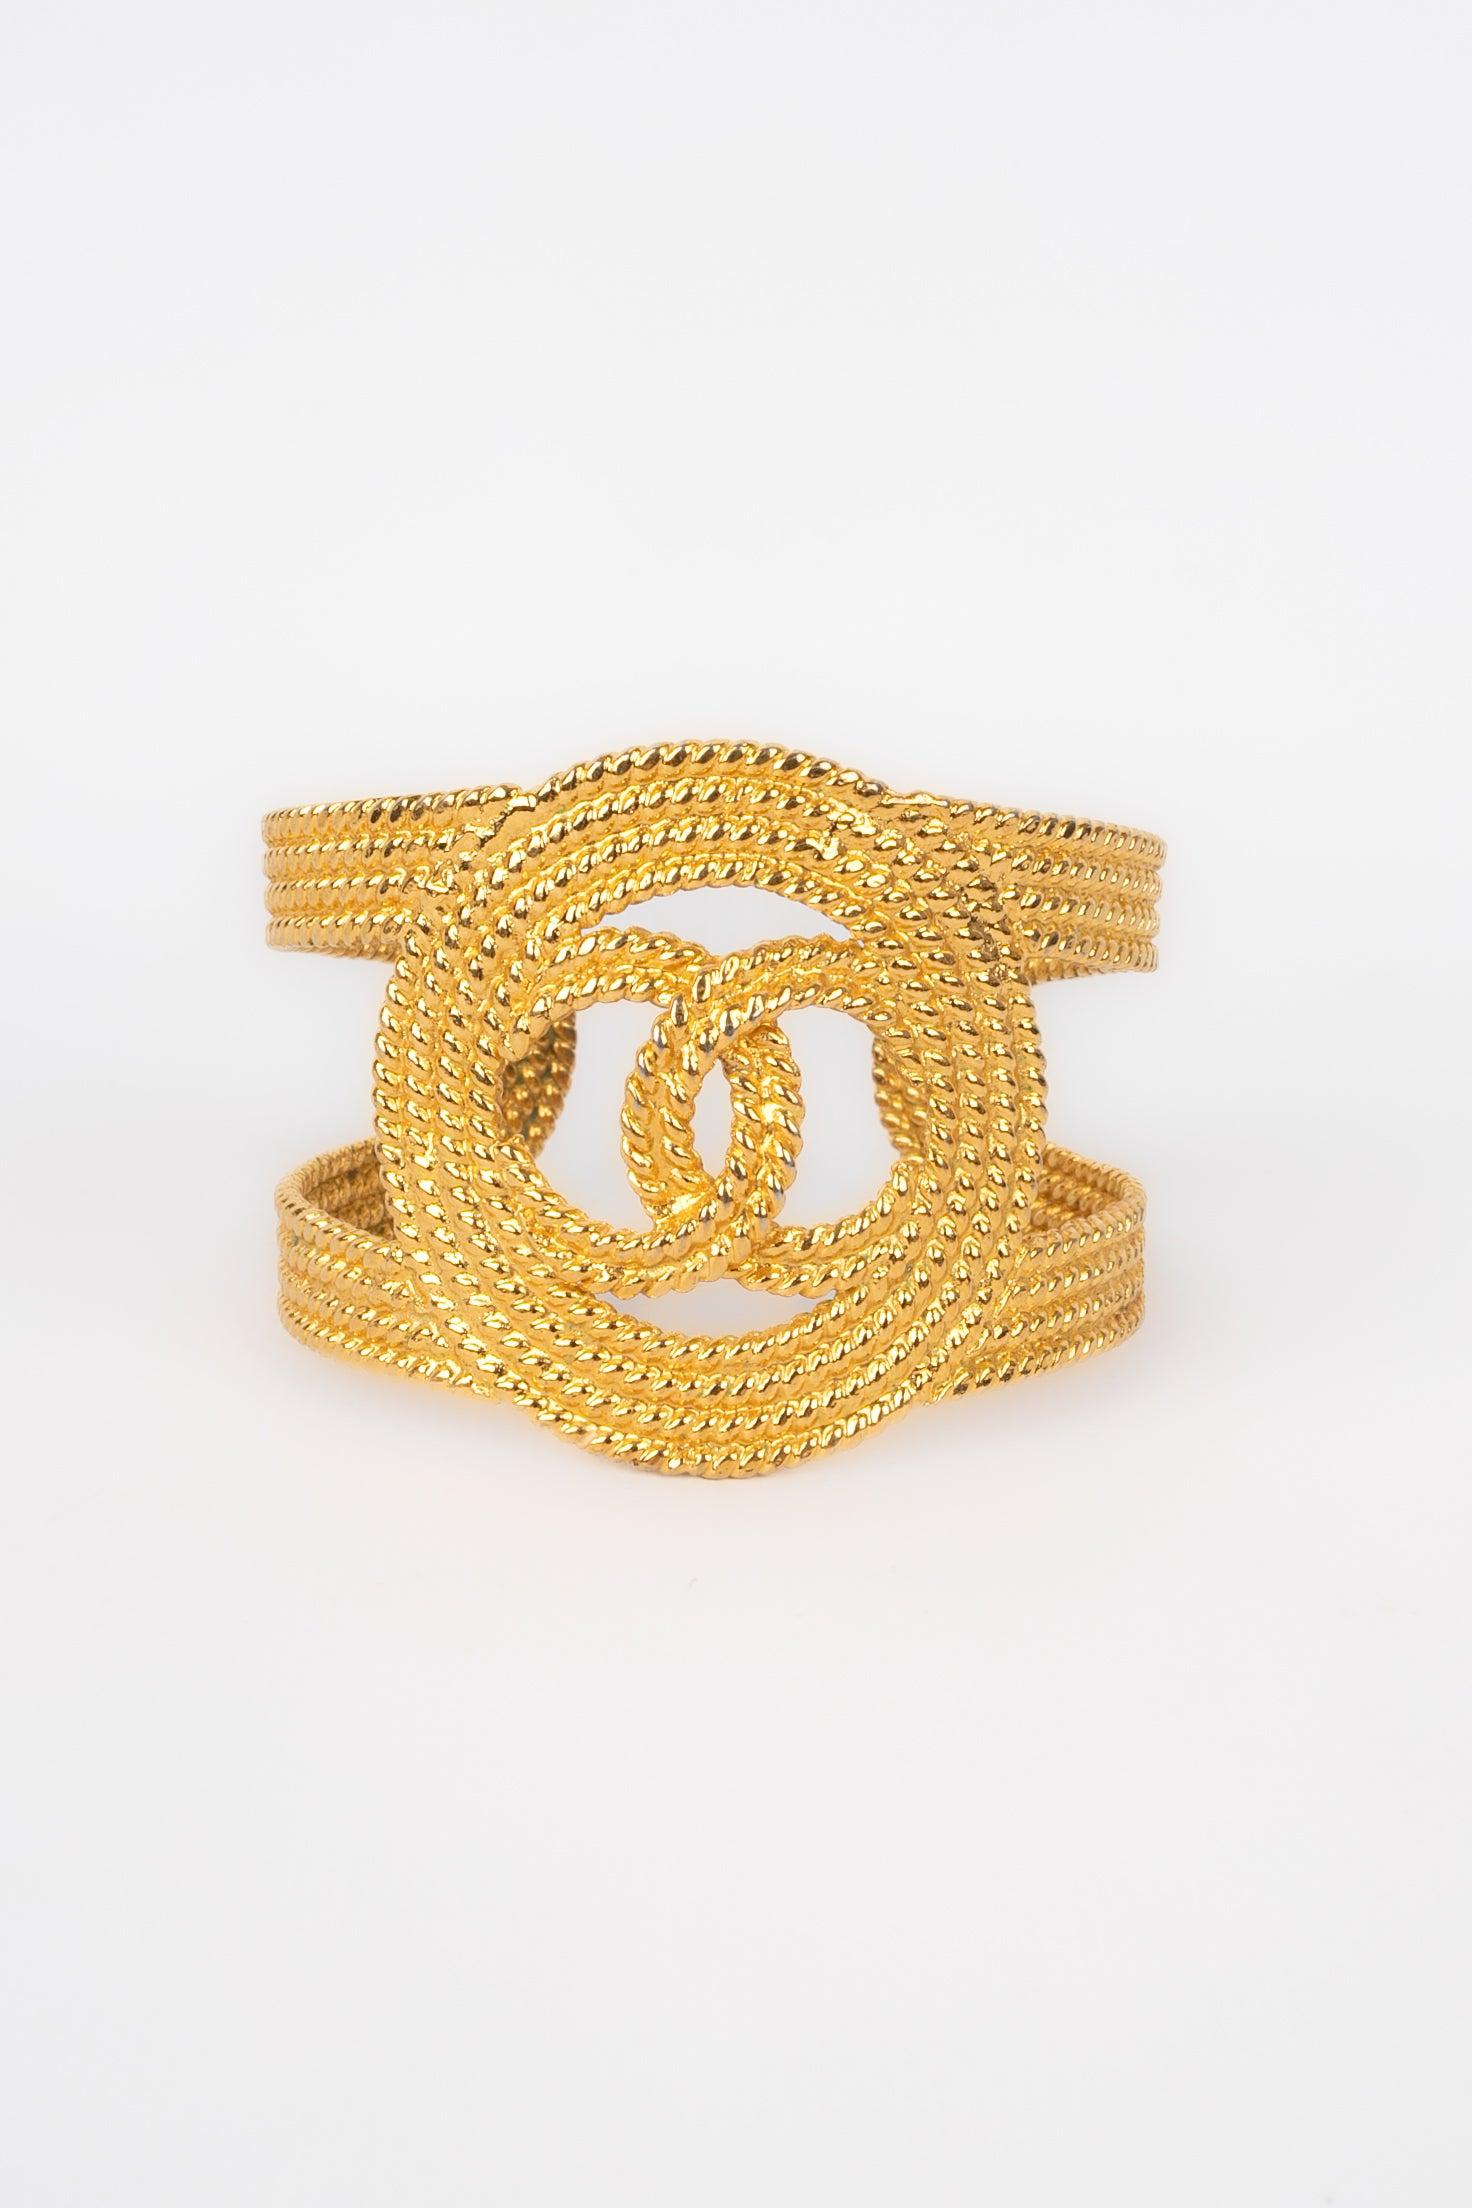 Chanel - (Made in France) Durchbrochenes goldenes Manschettenarmband aus Emtal. 2cc8 Collection'S.
 
 Zusätzliche Informationen: 
 Zustand: Sehr guter Zustand
 Abmessungen: Länge: 15,5 cm - Höhe: 5 cm
 Zeitraum: 21. Jahrhundert
 
 Sellers Referenz: